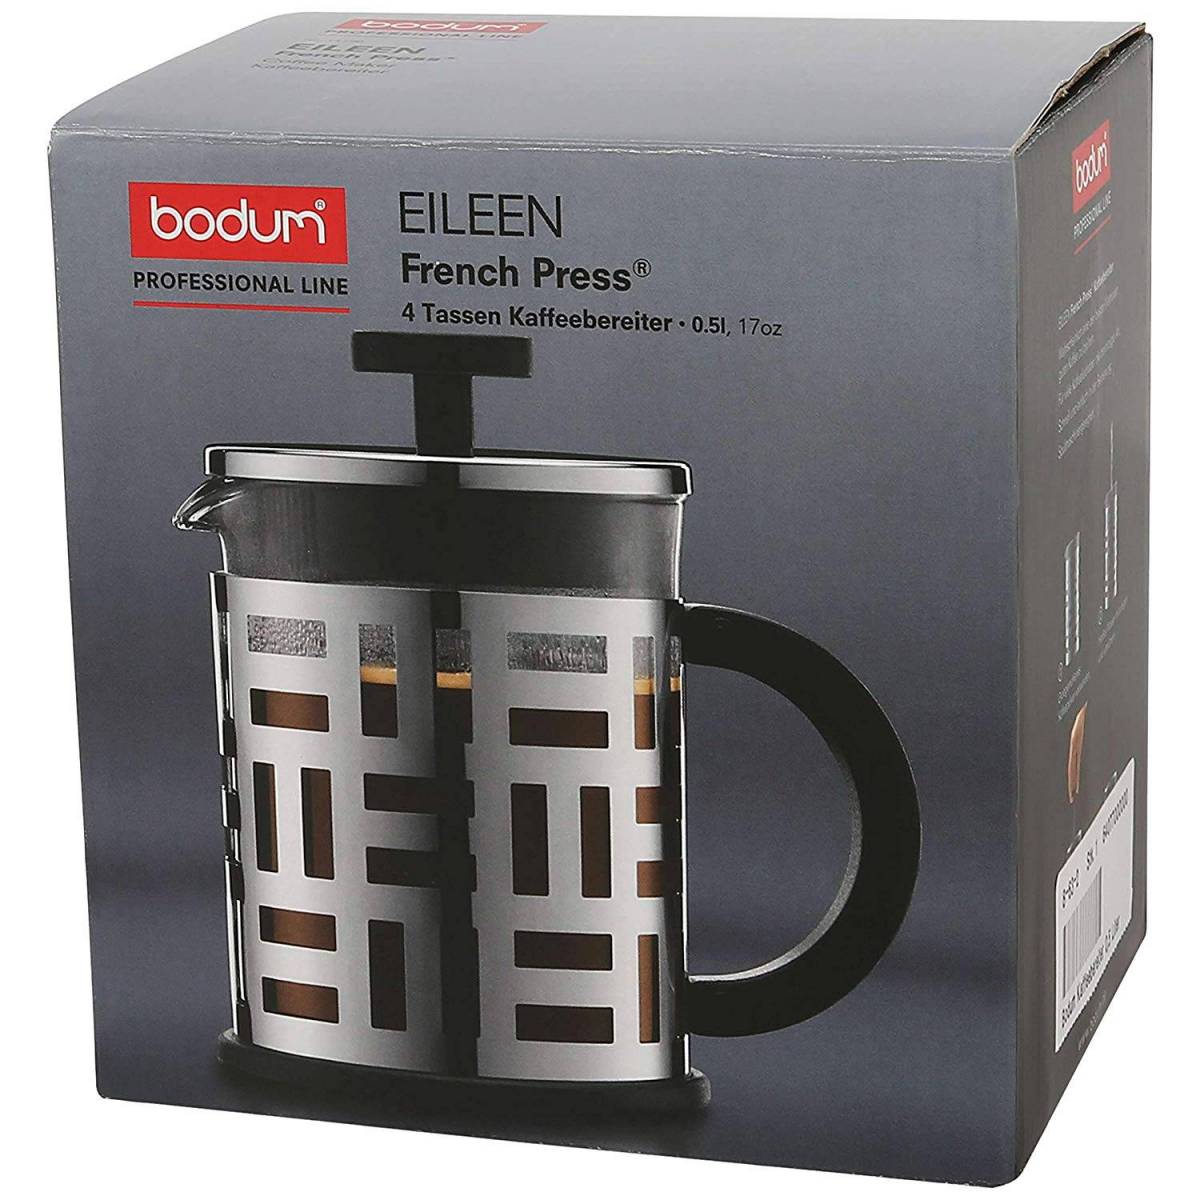 Bodum Professional Line Eileen Cafetière à Piston 0,5 L